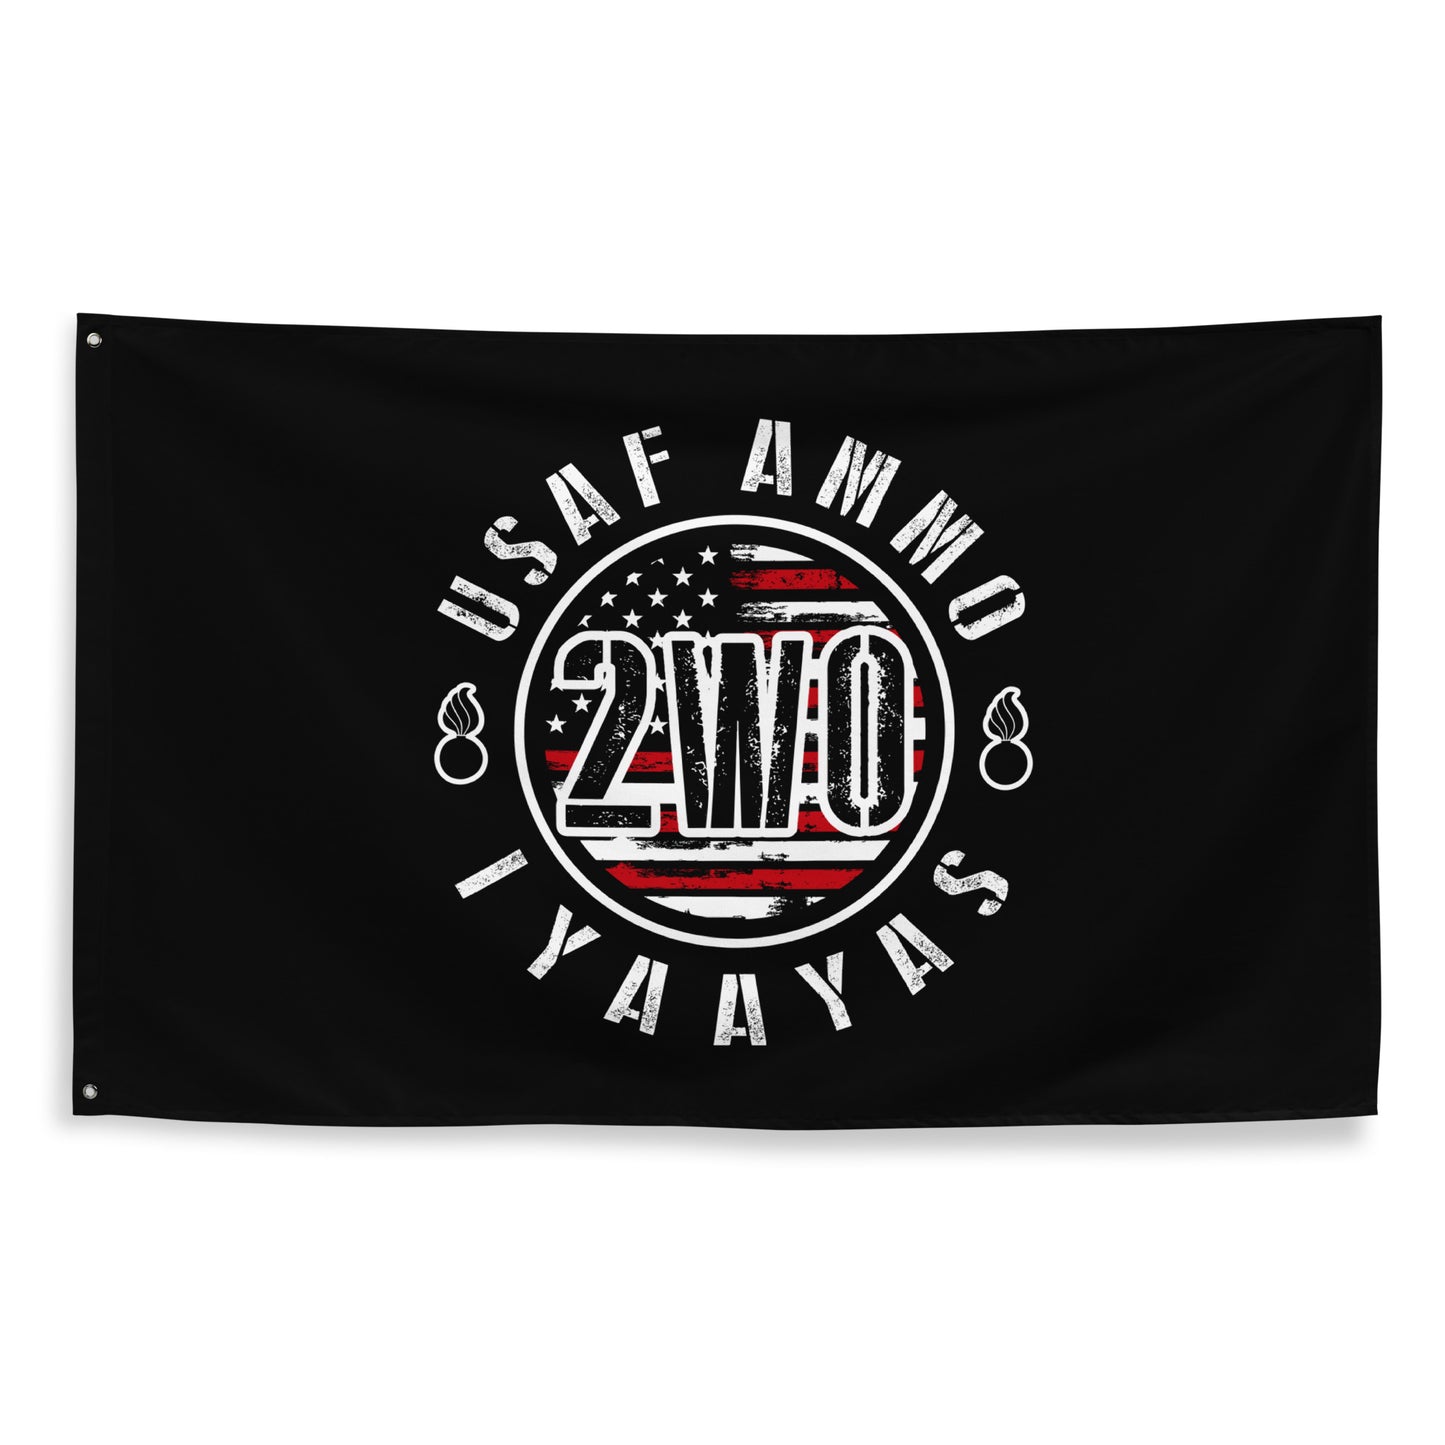 USAF AMMO Circular 2W0 American Grunge IYAAYAS Logo One-Sided Wall Flag